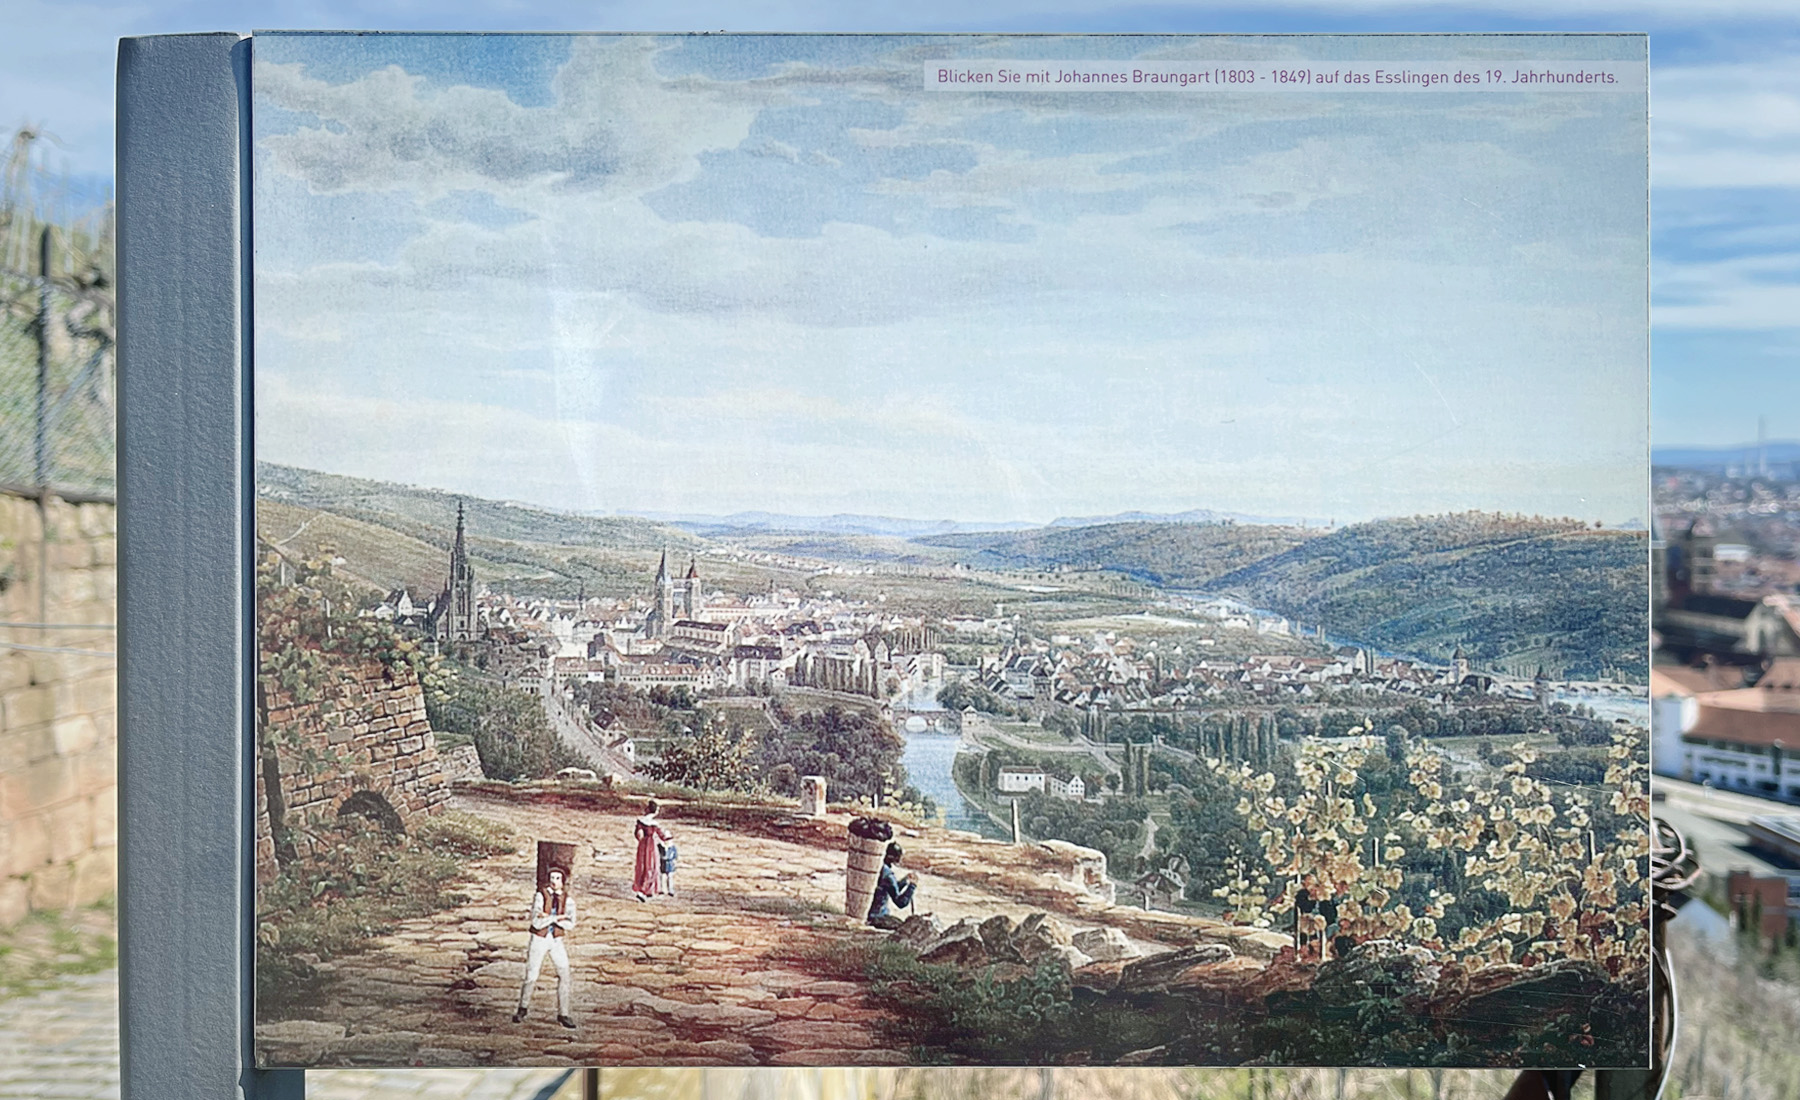 德國 Stuttgart（斯圖加特）鄰近古鎮 Esslingen am Neckar（埃斯林根），葡萄園景觀步道，舊時景觀畫作